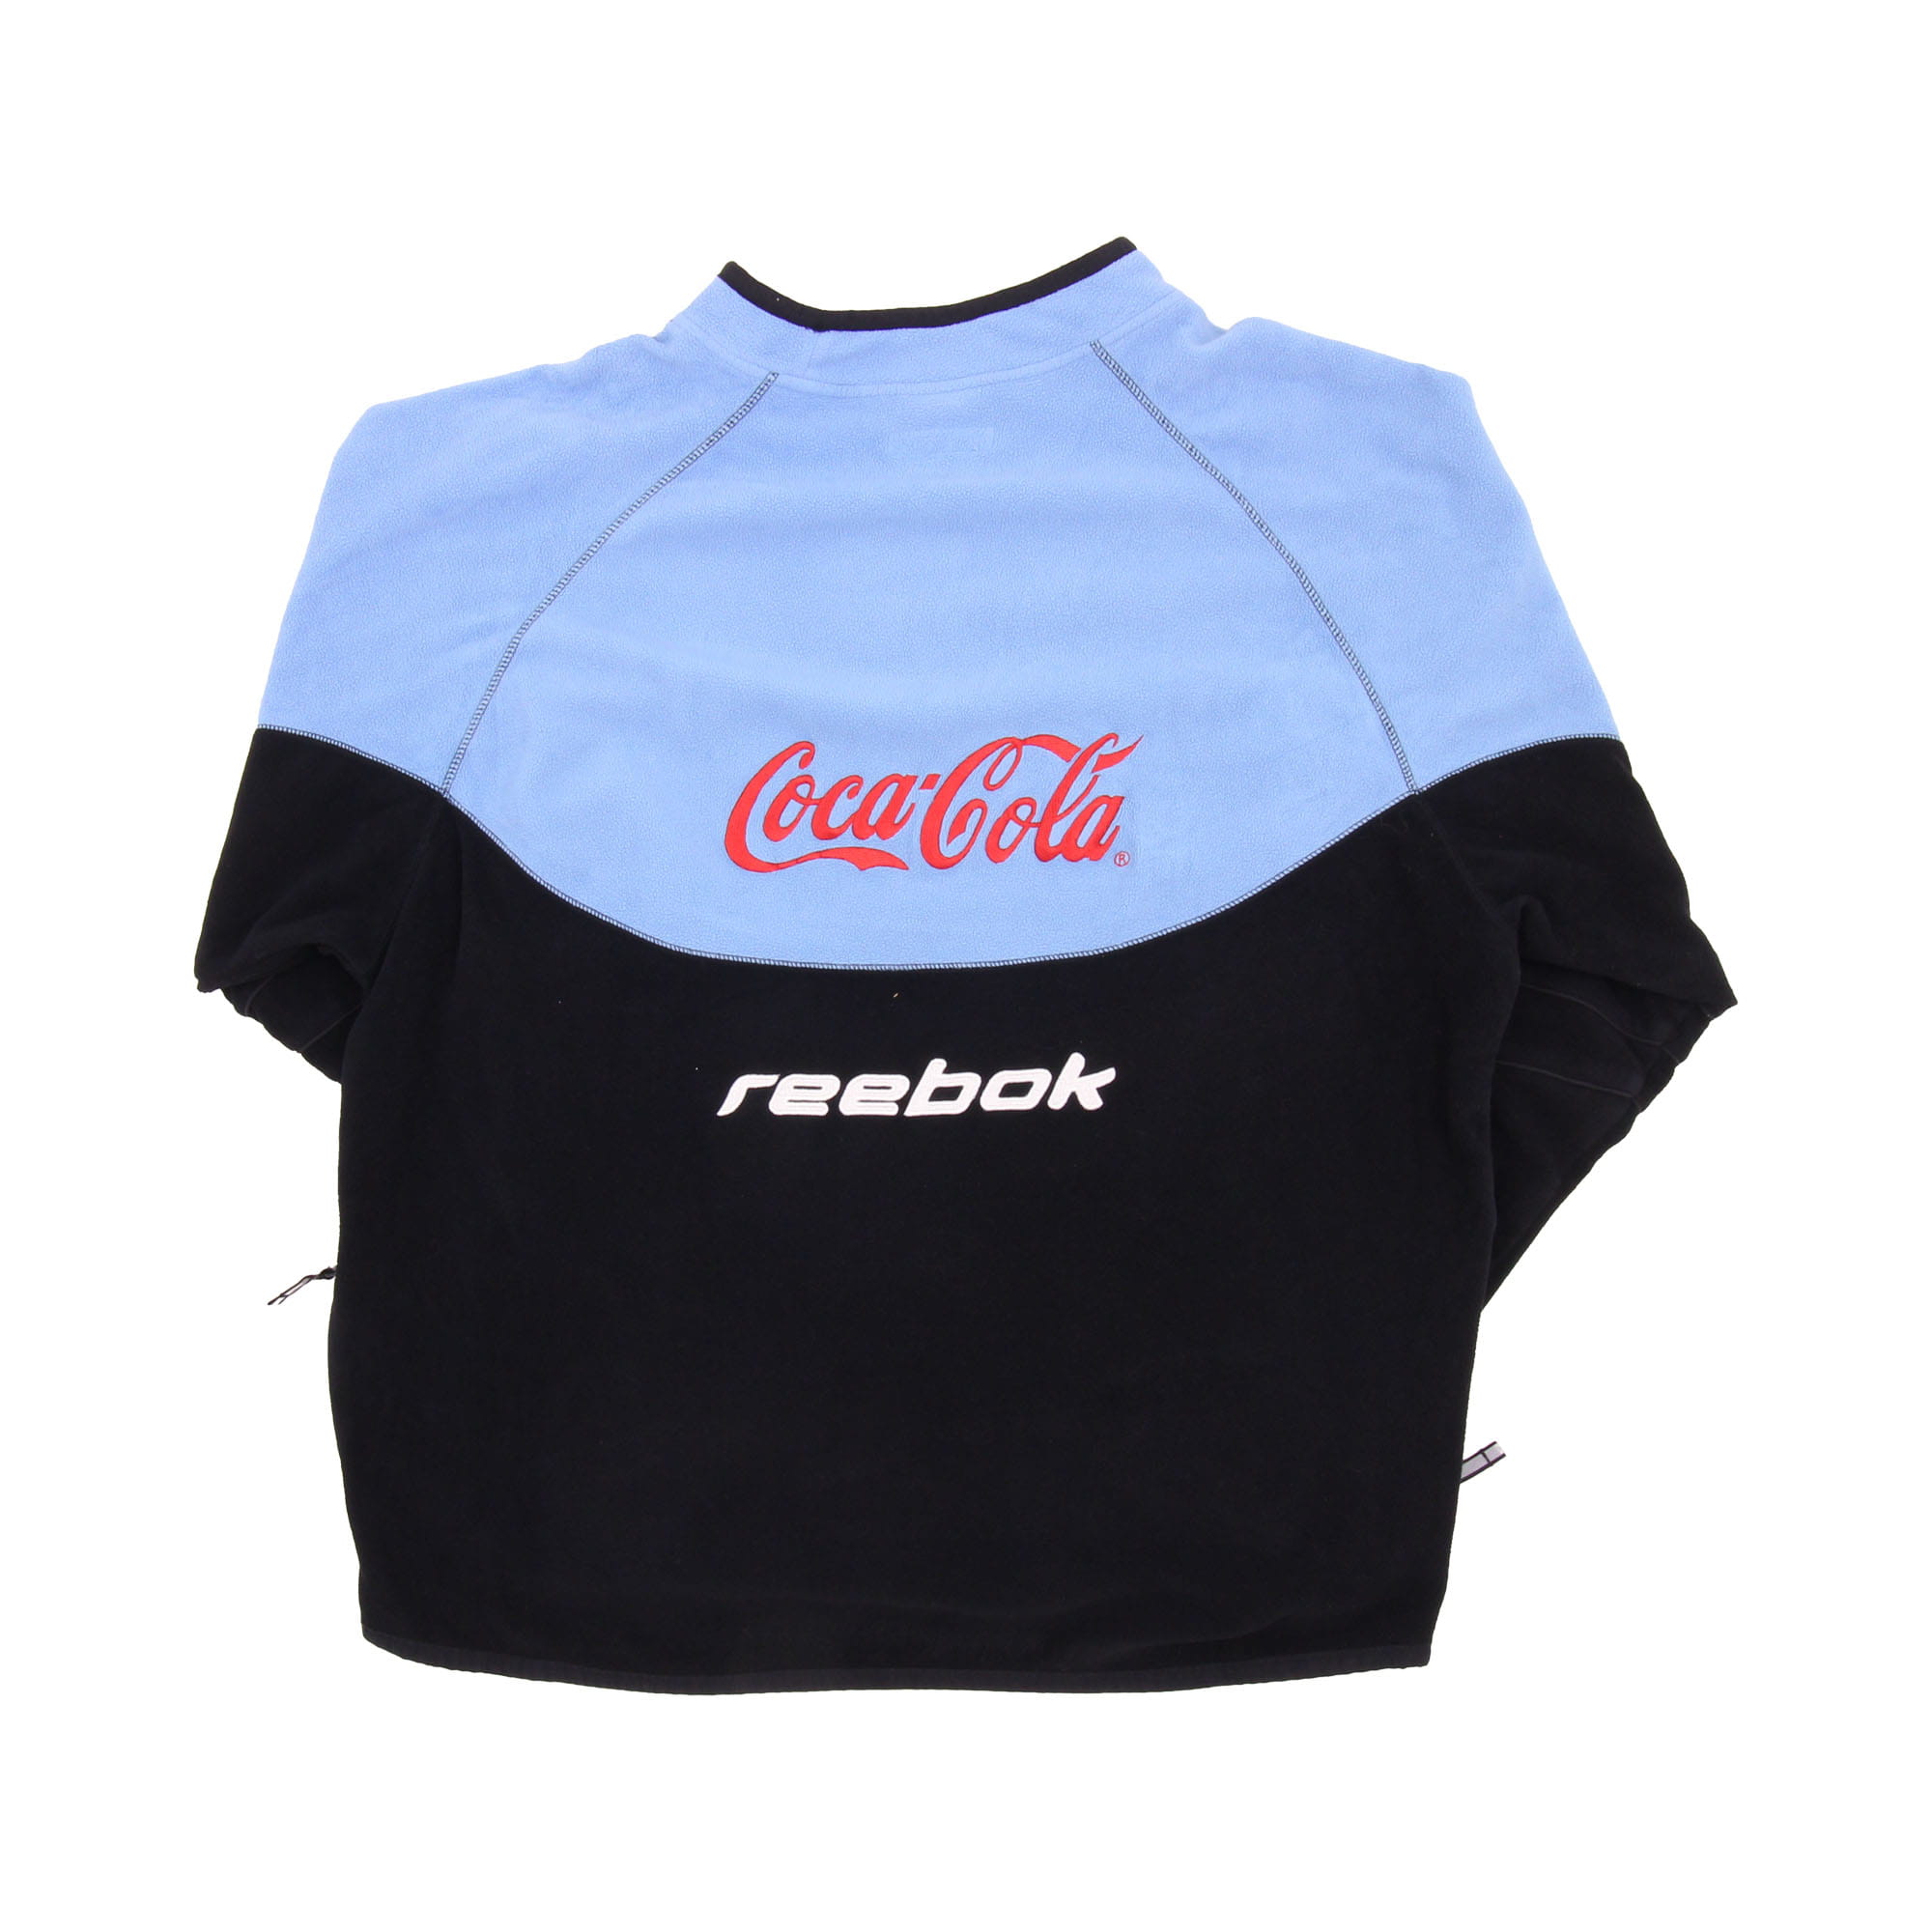 Reebok Argentina Coca Cola Center Logo Fleece -  XL